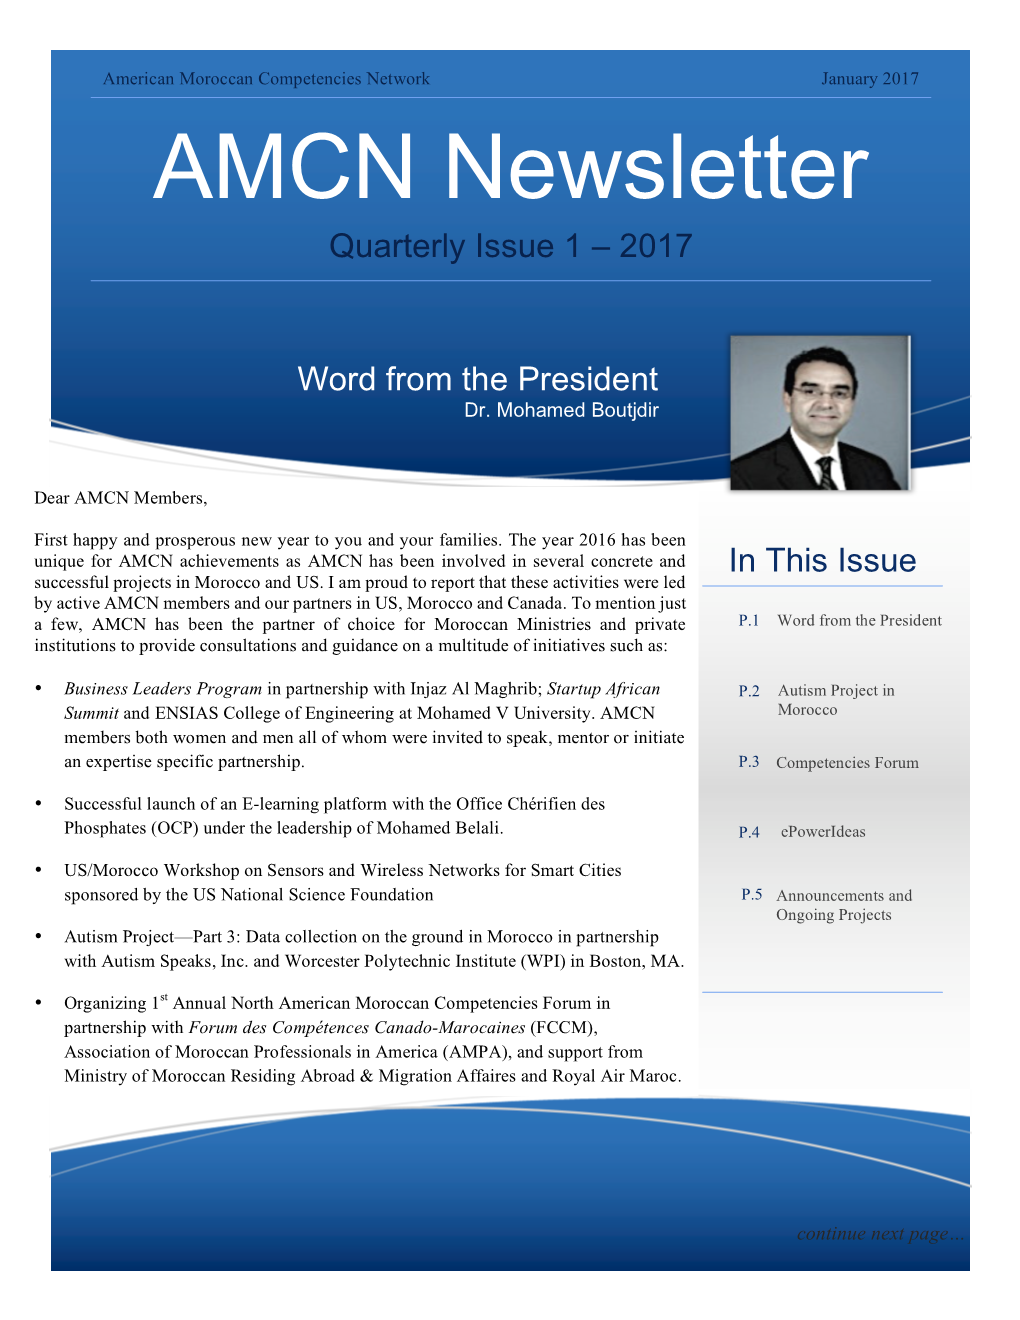 AMCN Newsletter Quarterly Issue 1 – 2017